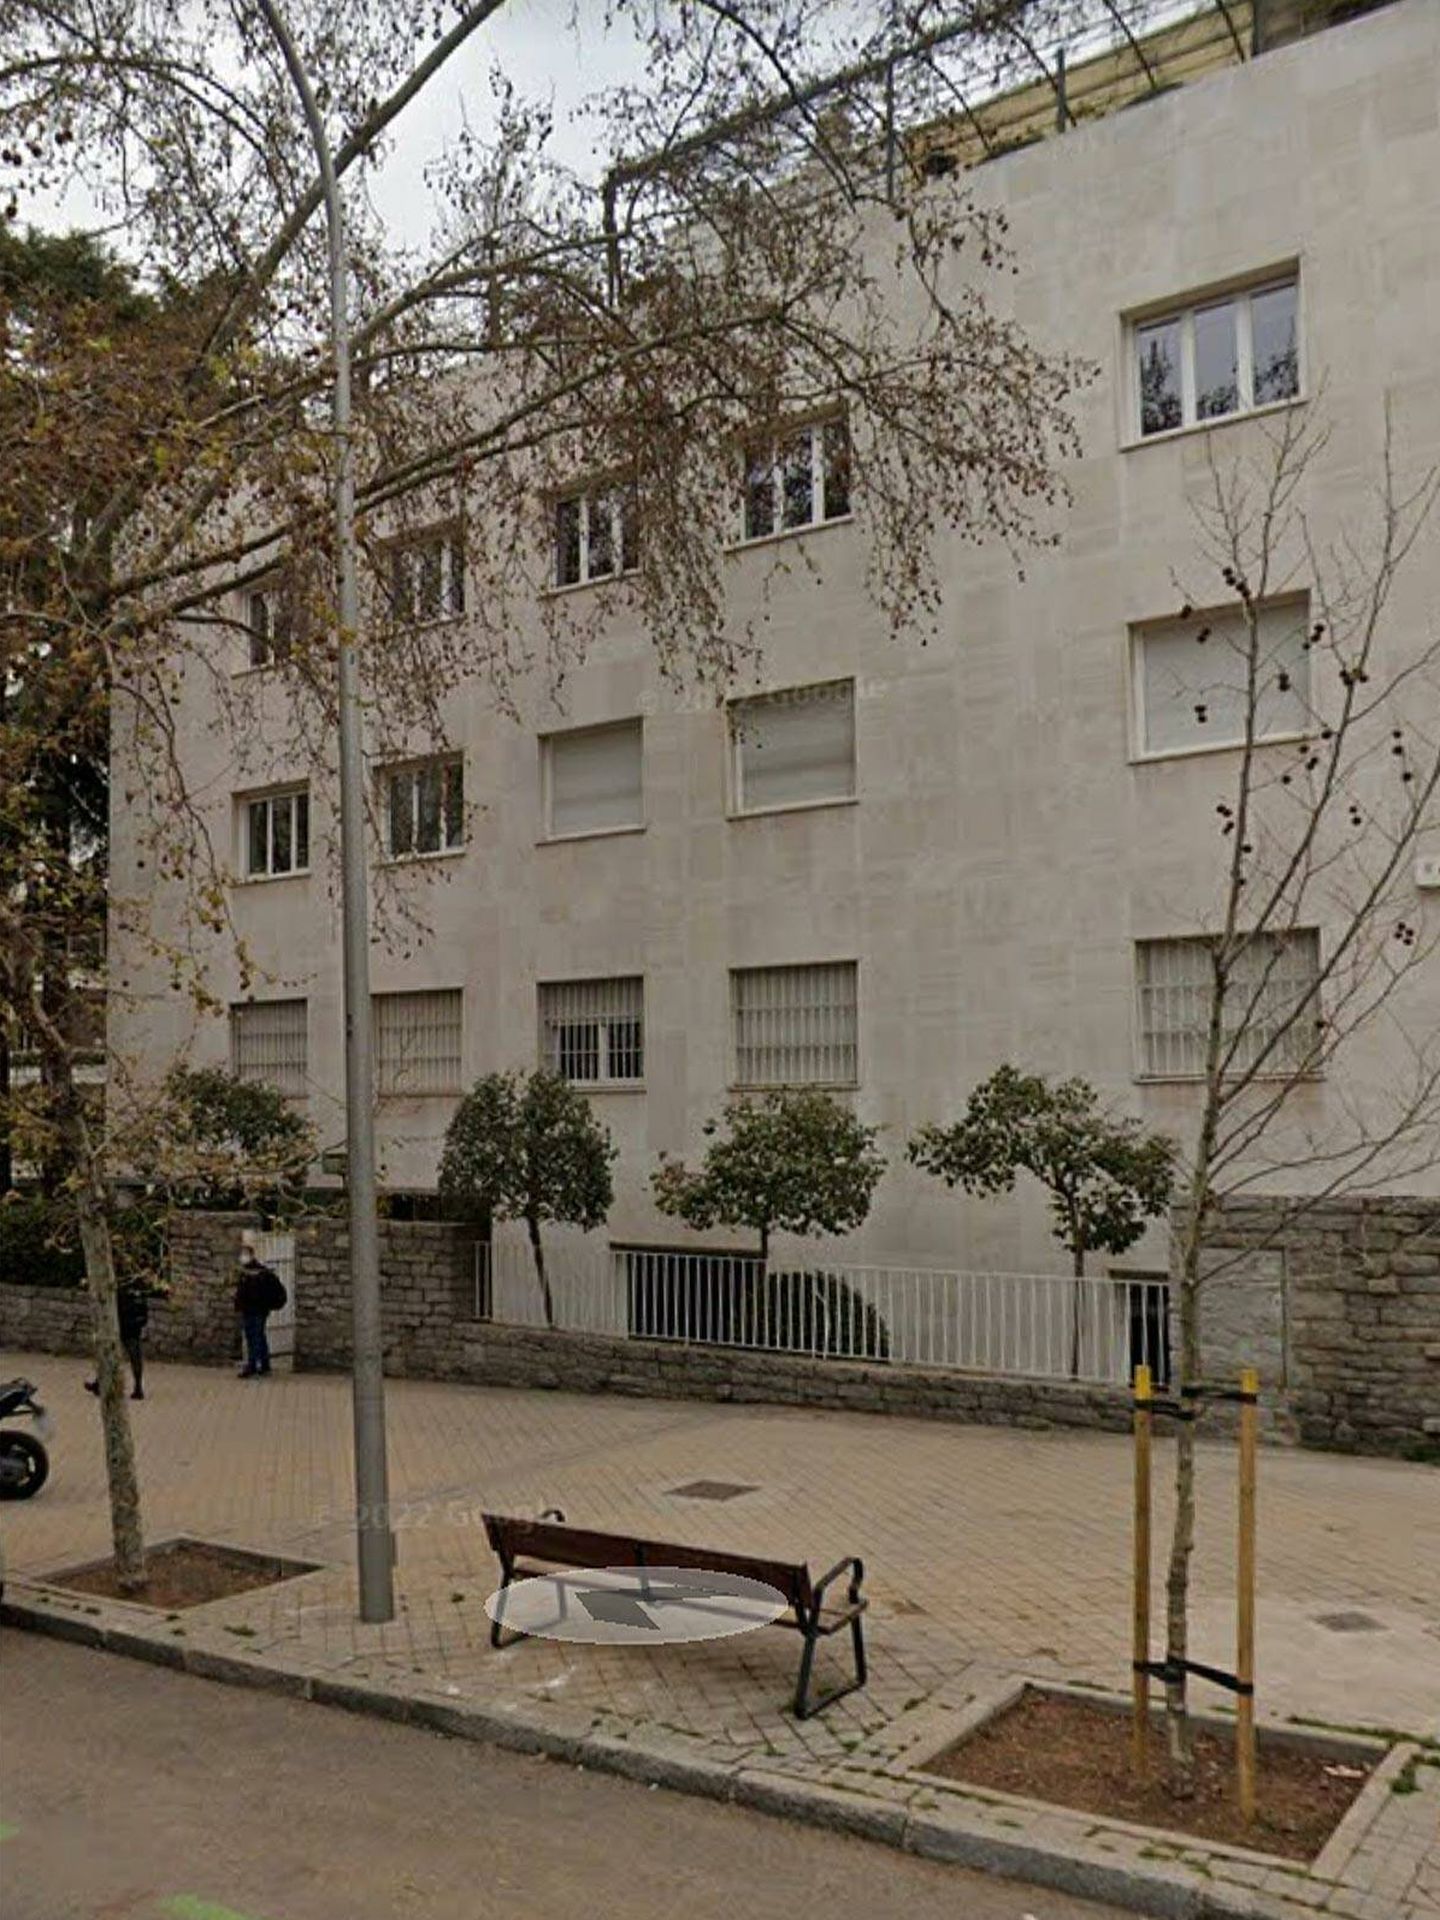 Fachada del domicilio de Ava Gadner en Madrid (Google maps)